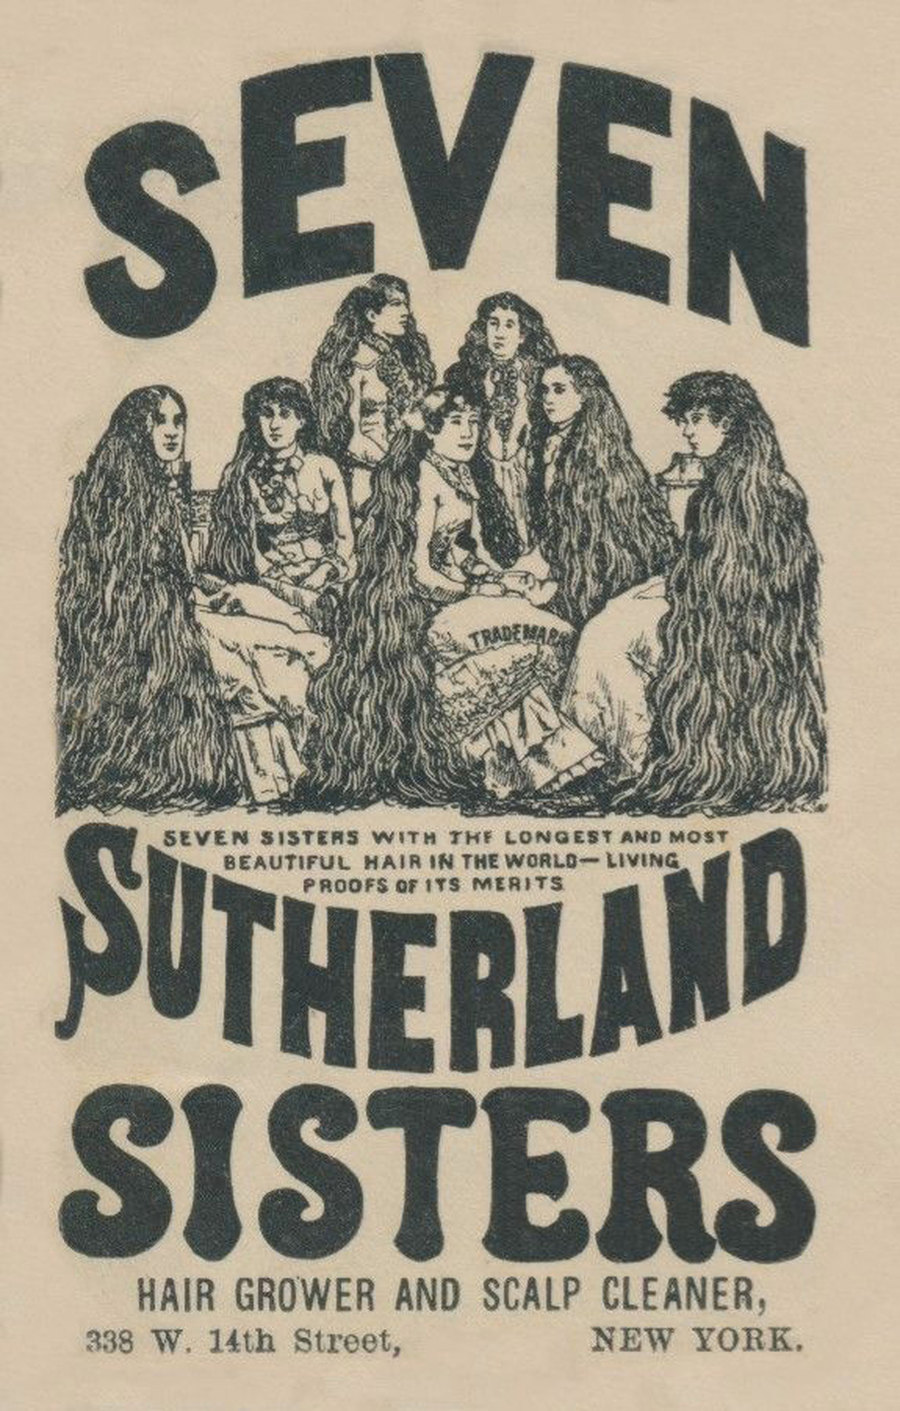 как семь сестер Сазерленд заработали миллионы на своих длинных волосах, 2